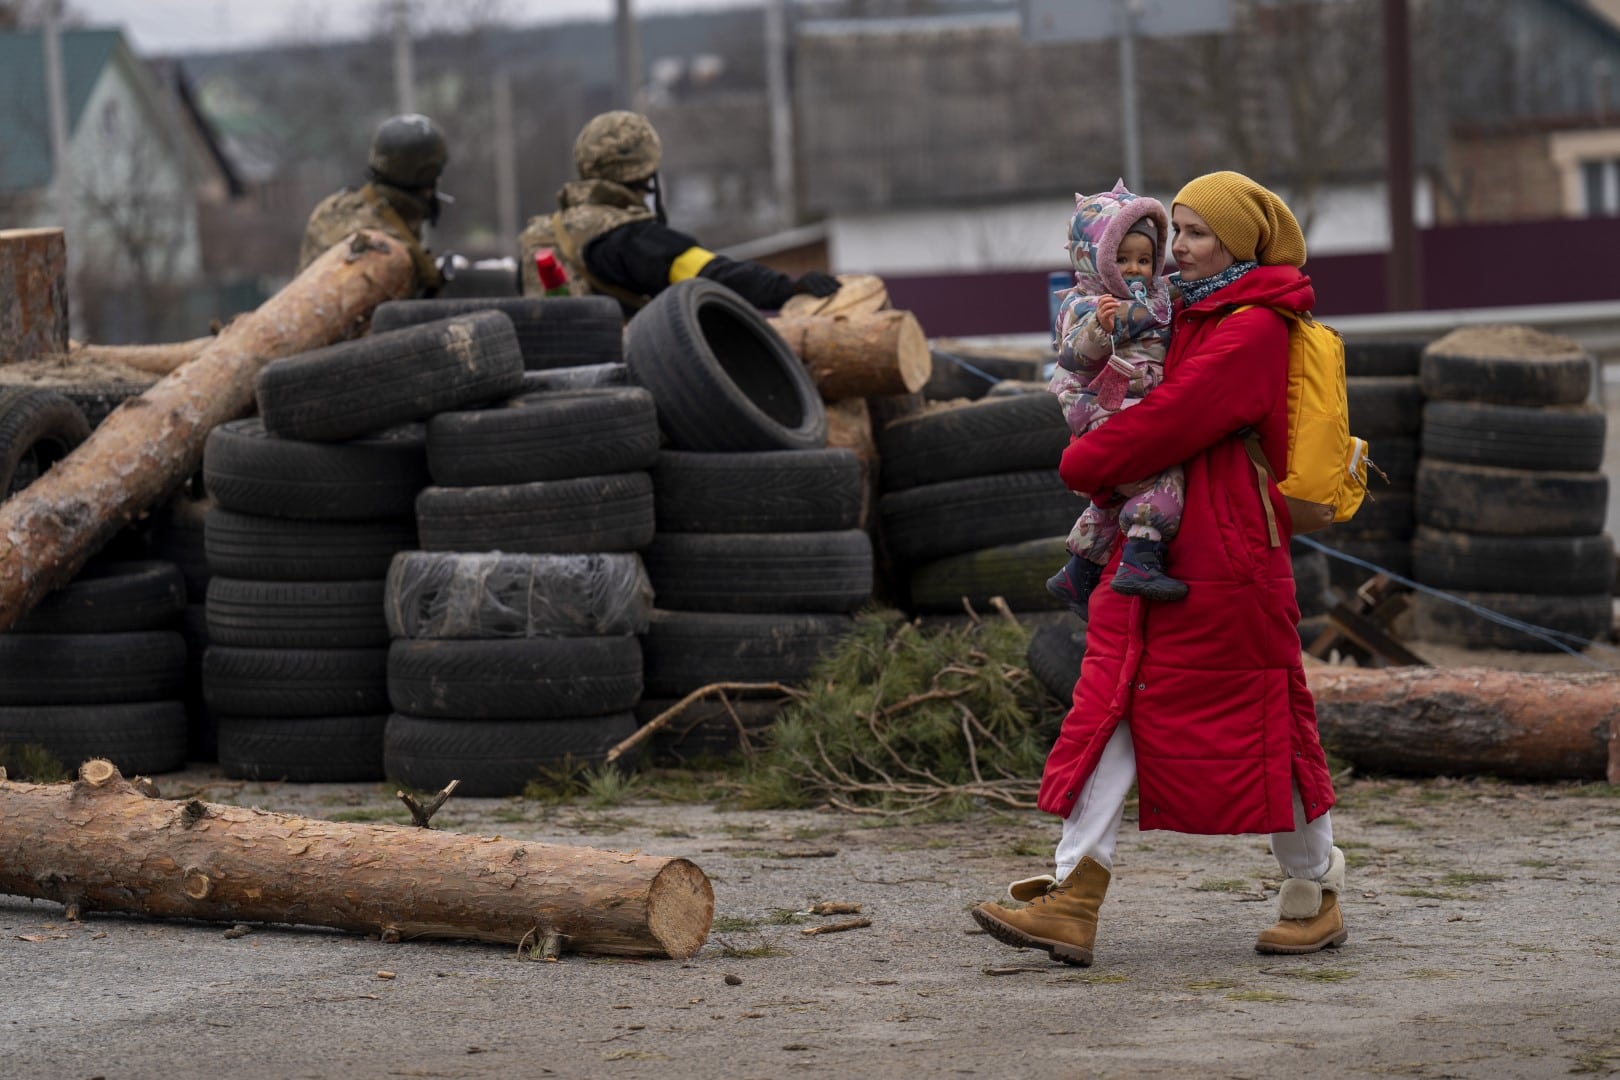 אישה אוקראינית עם תינוק חולפת על פני מחסום של הכוחות האוקראיניים ליד אירפין, אוקראינה, 5 במרץ 2022 (צילום: AP Photo/Emilio Morenatti)